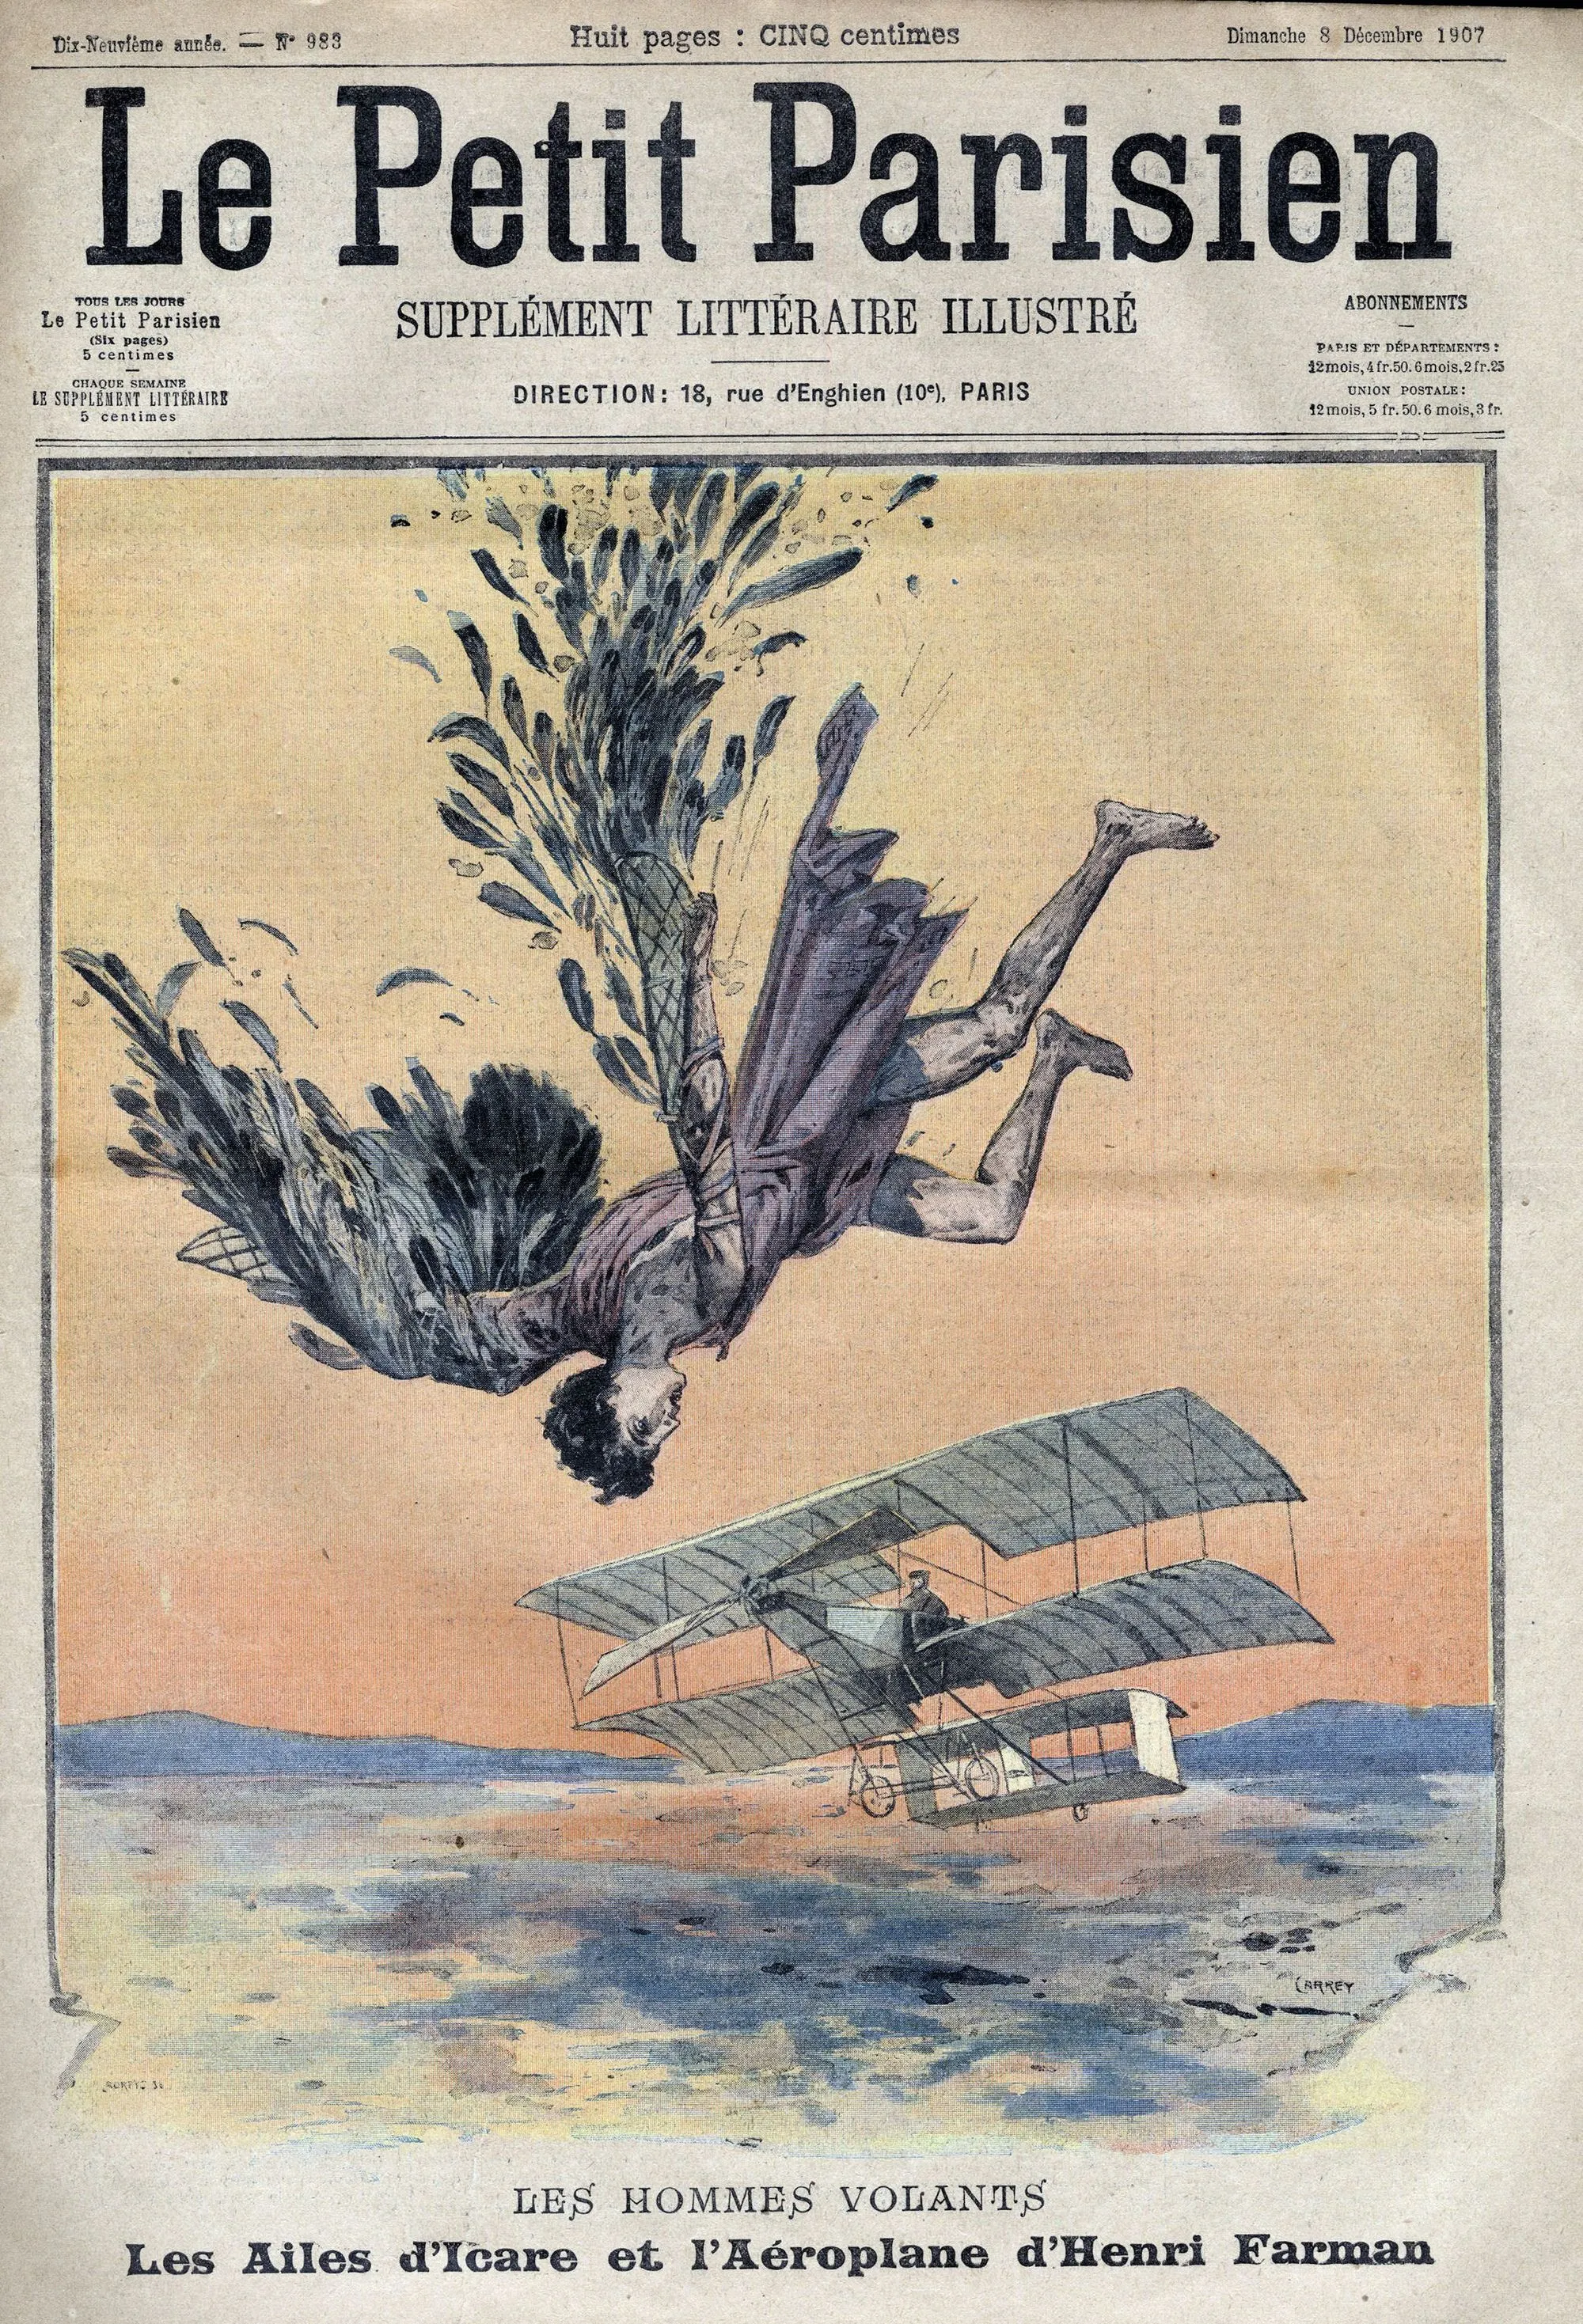 « Les hommes volants. Les ailes
d'Icare et l'aéroplane d'Henri Farman »,
Le Petit Parisien : supplément littéraire
illustré, 24 novembre 1907.